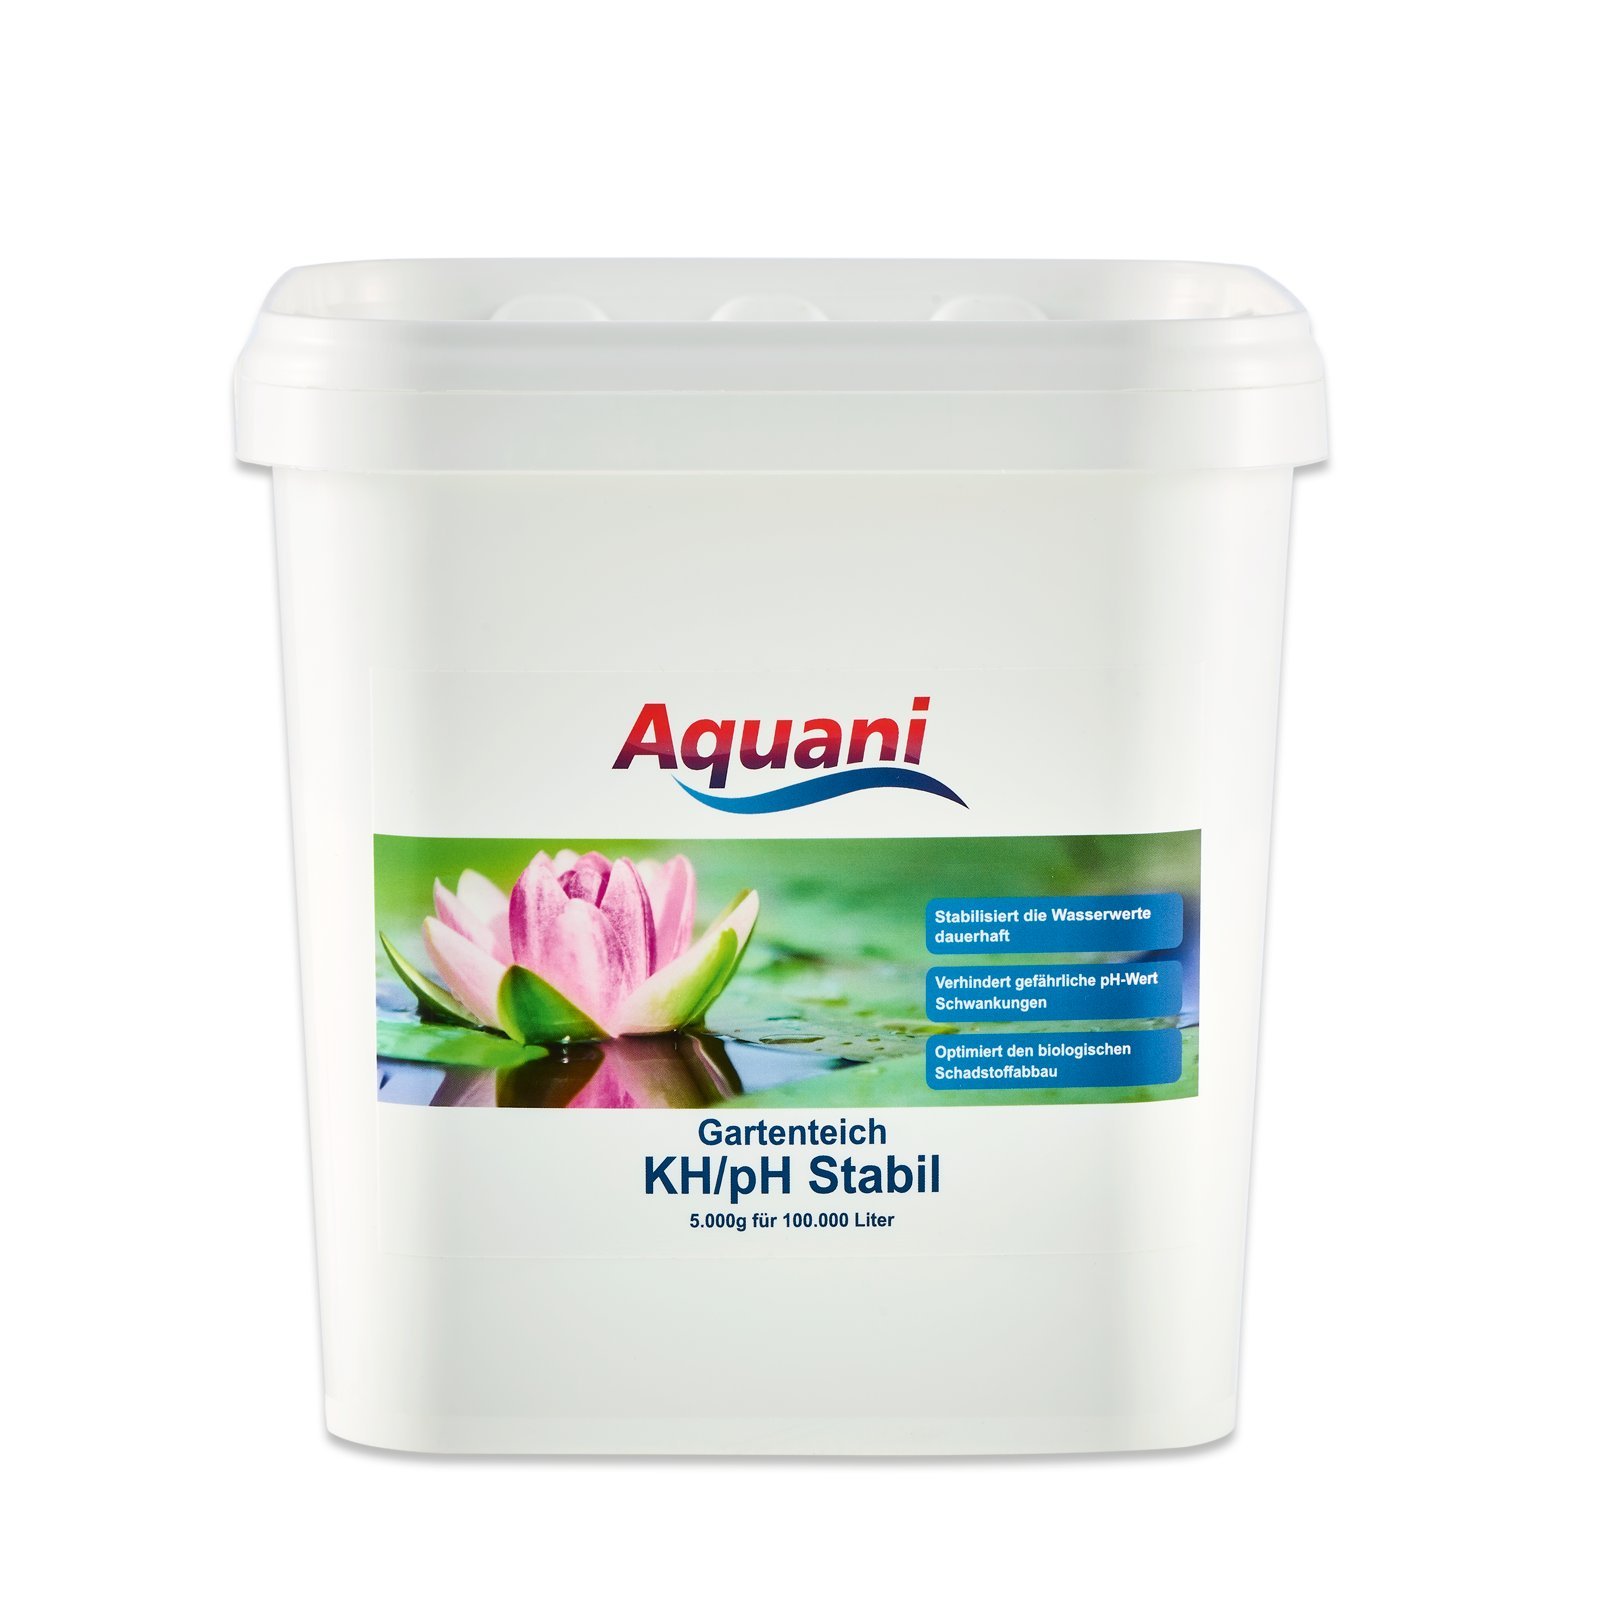 Aquani KH/pH Stabil 5.000g erhöht die Karbonathärte für stabile Wasserwerte gesunde Fische und optimalen biologischen Schadstoffabbau im Teich